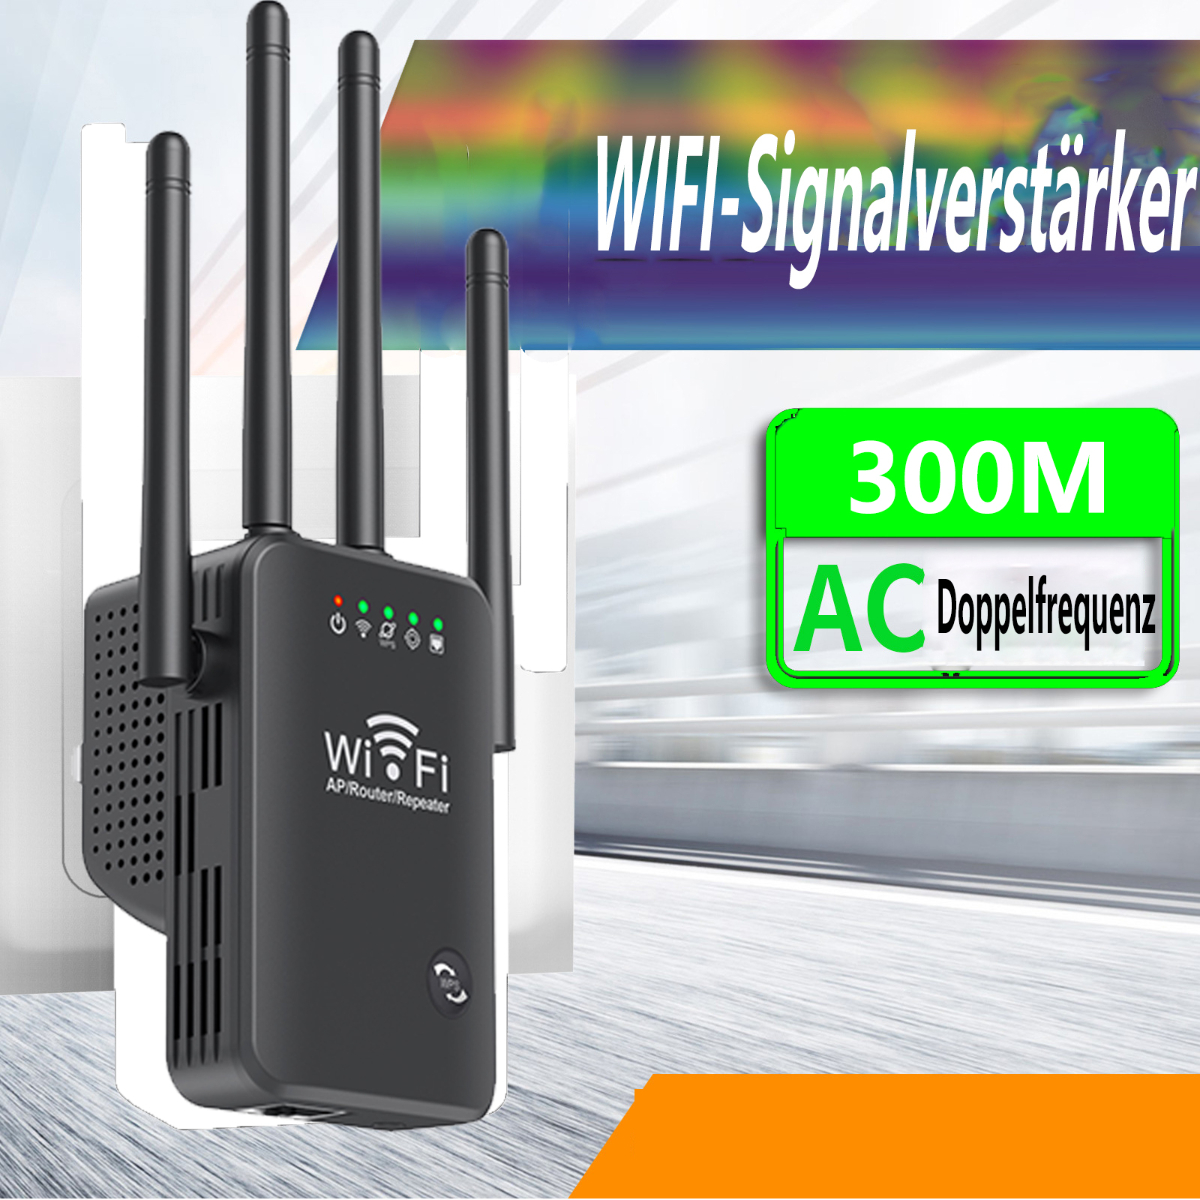 4 schwarz booster netzwerk antennen Drahtloser wifi 300M wireless AP SHAOKE router signal verstärker LAN-Repeater repeater